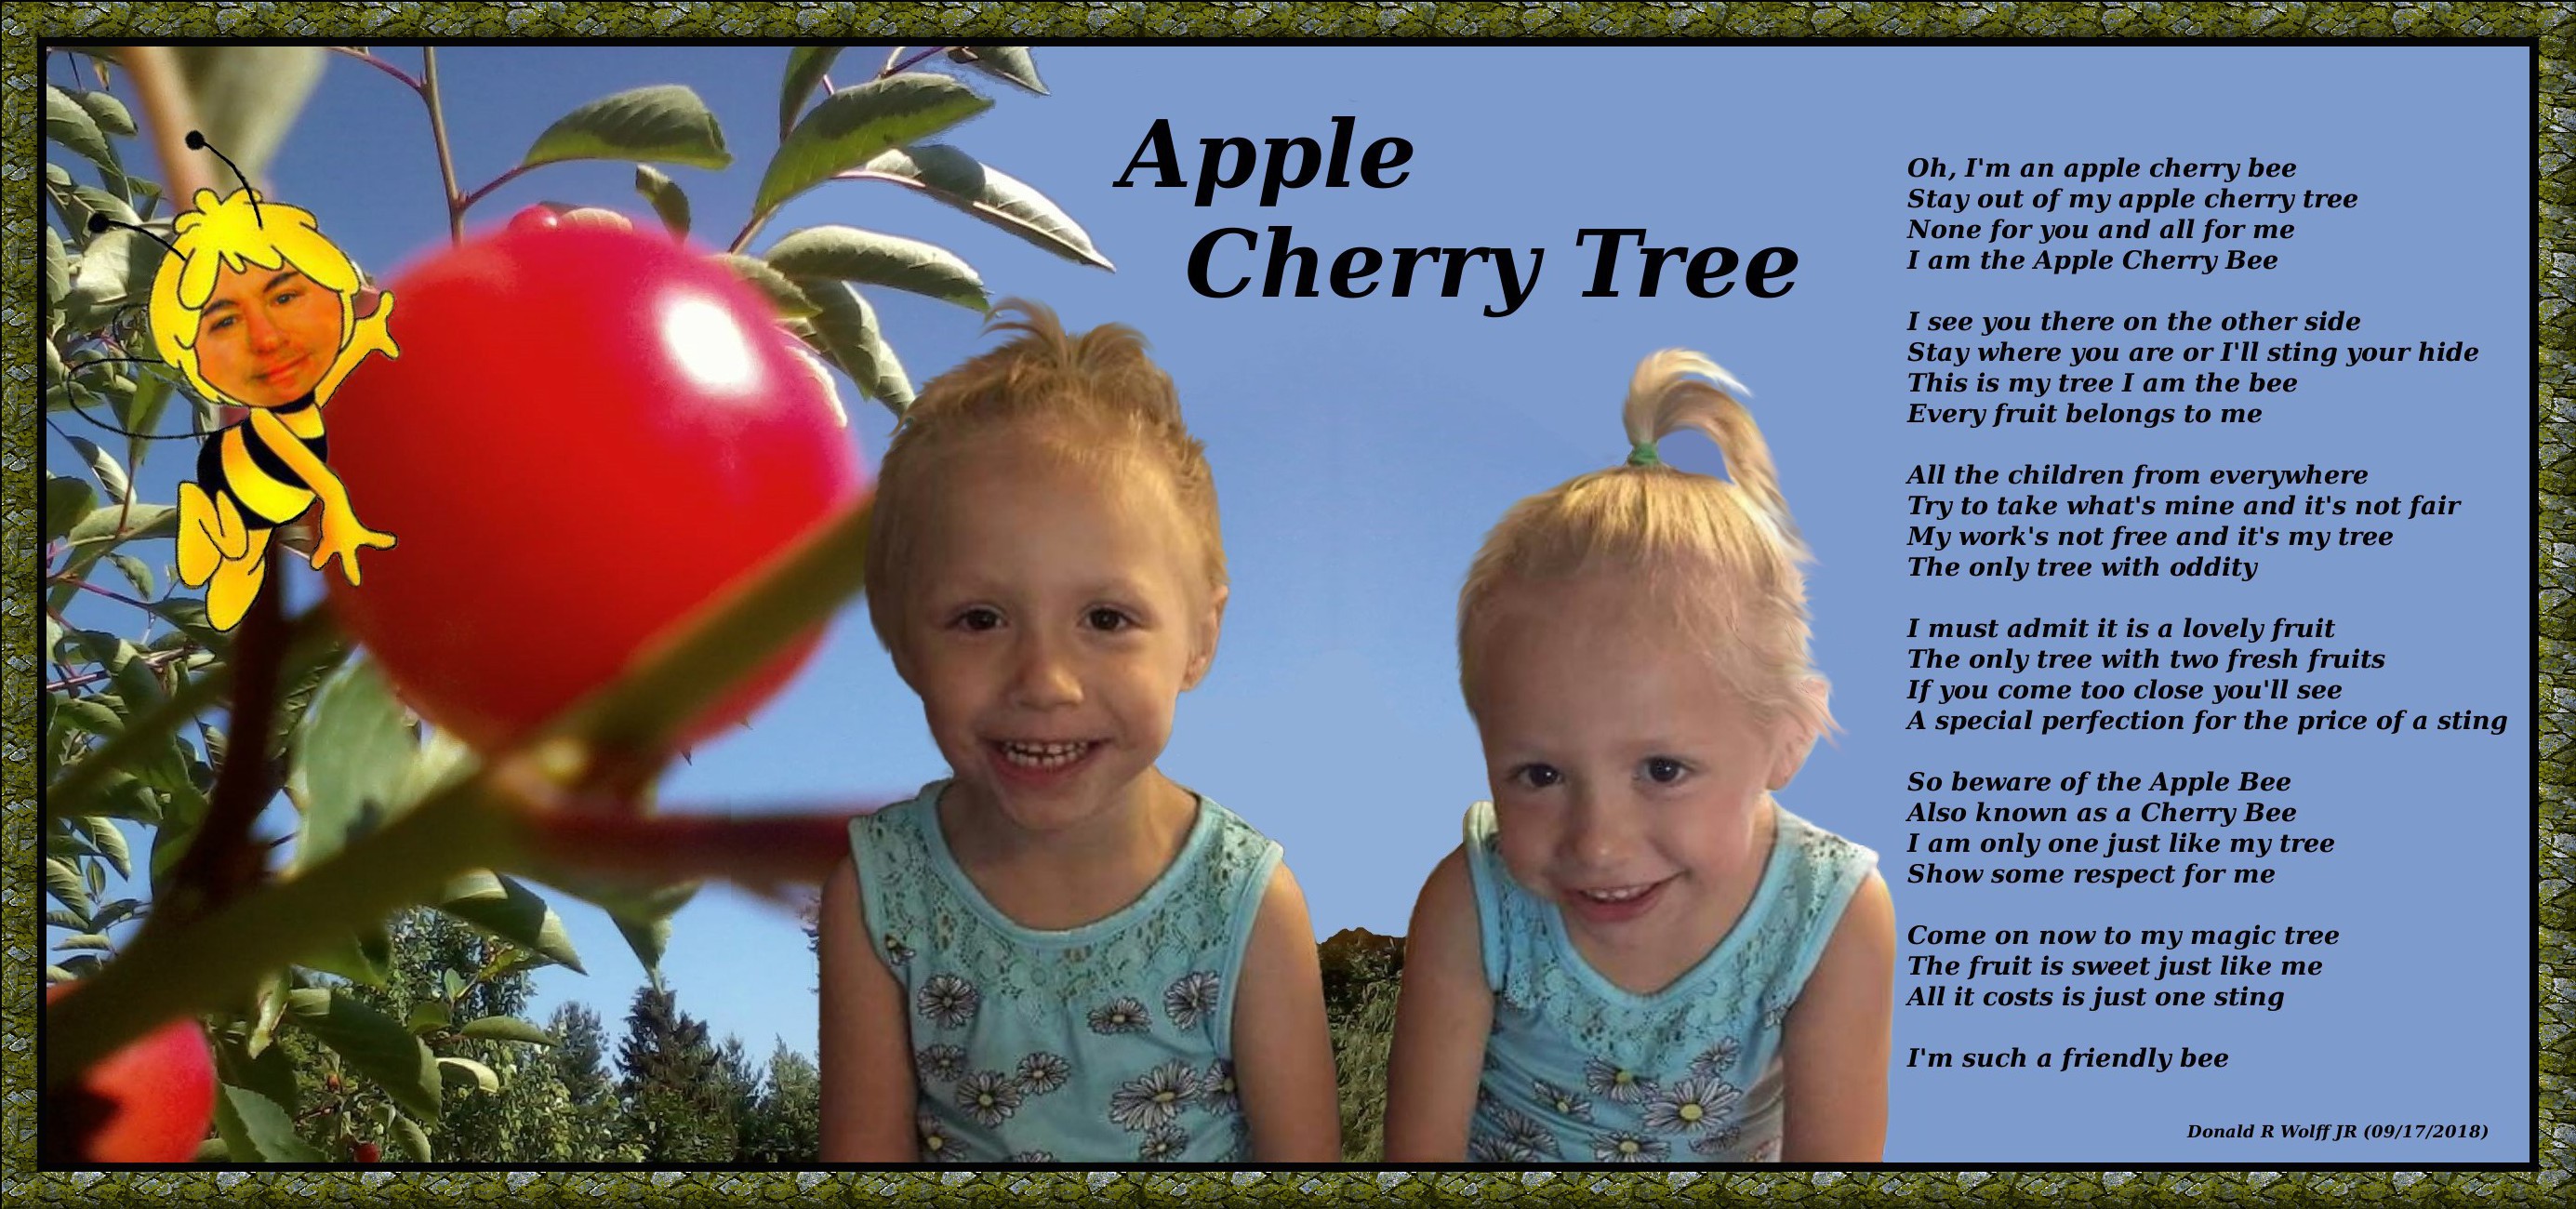 Apple Cherry Tree